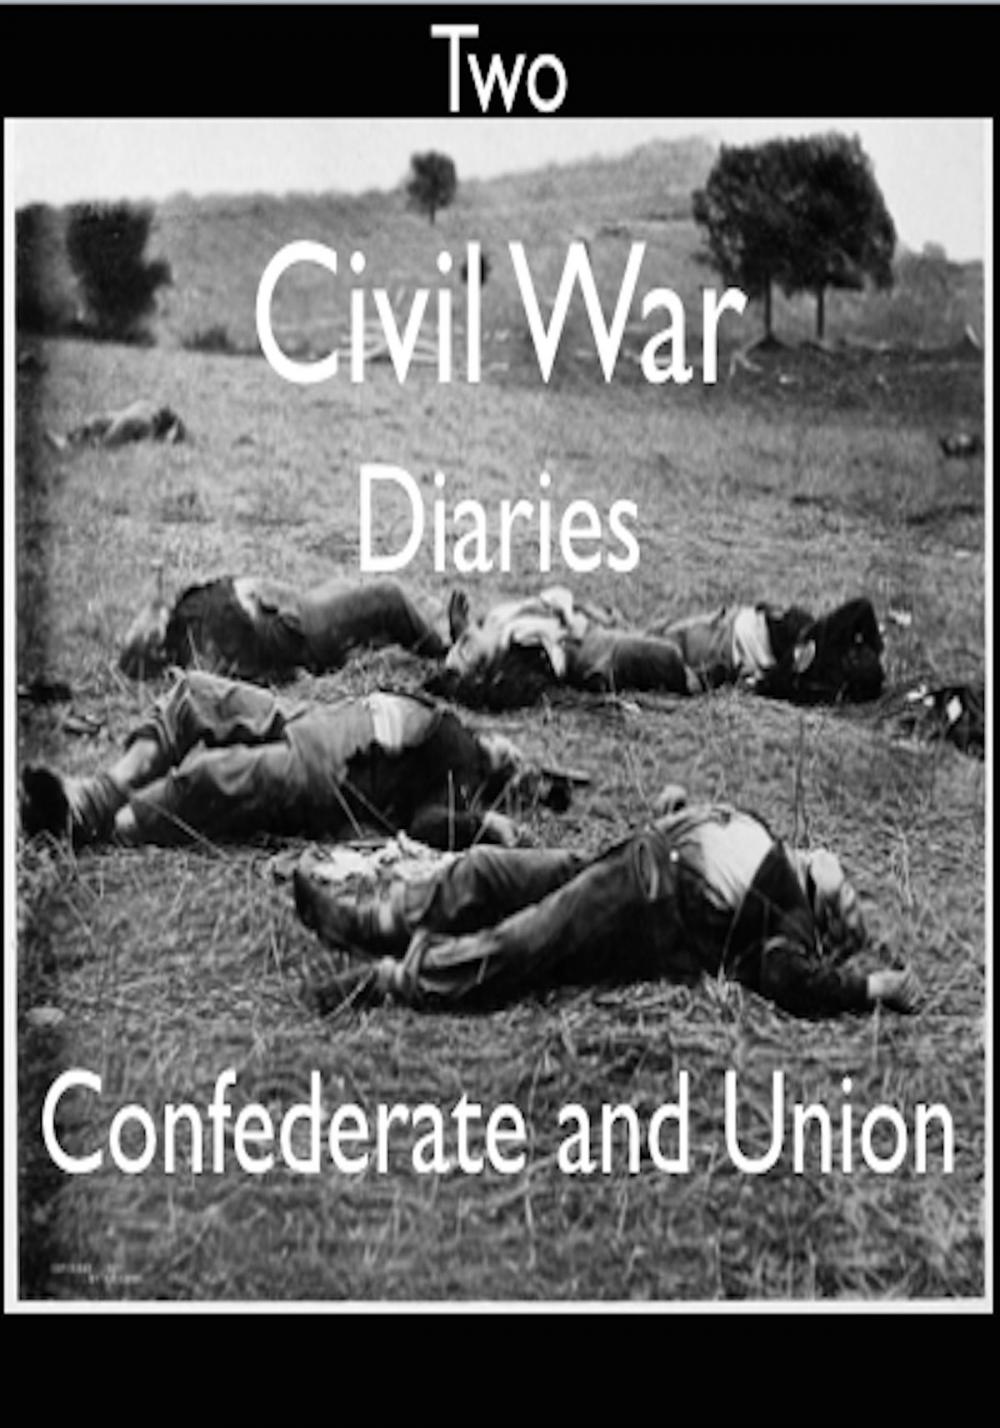 Big bigCover of Two Civil War Diaries